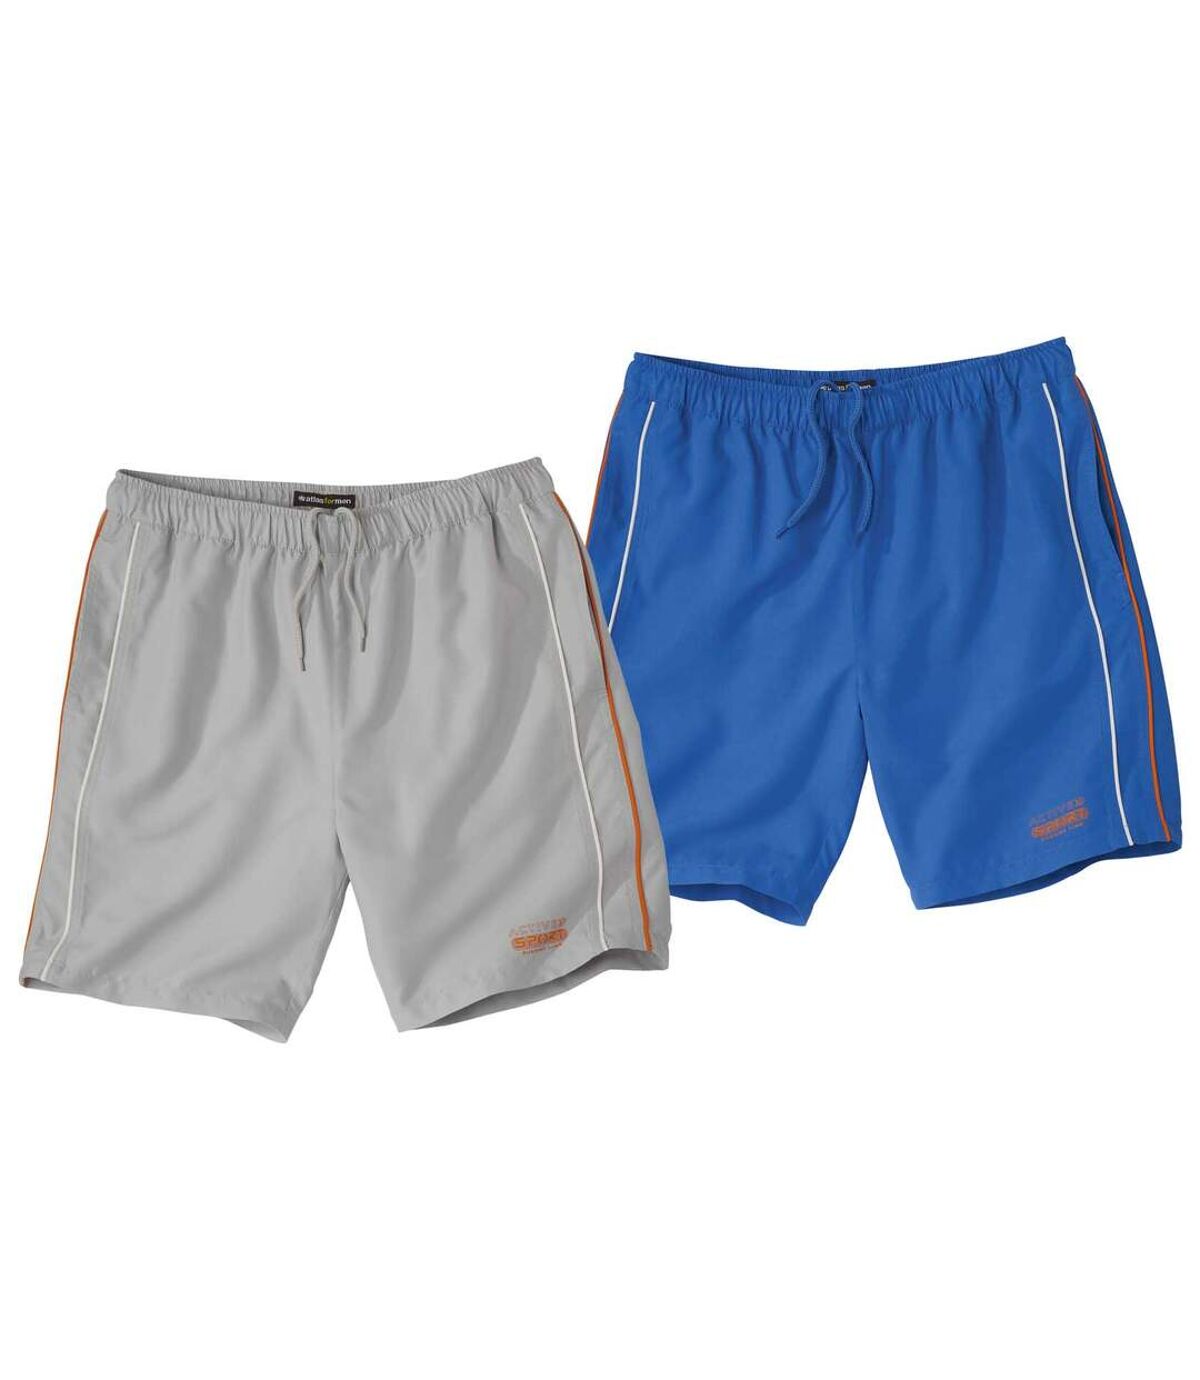 Pack of 2 Men's Blue & Gray Shorts Atlas For Men